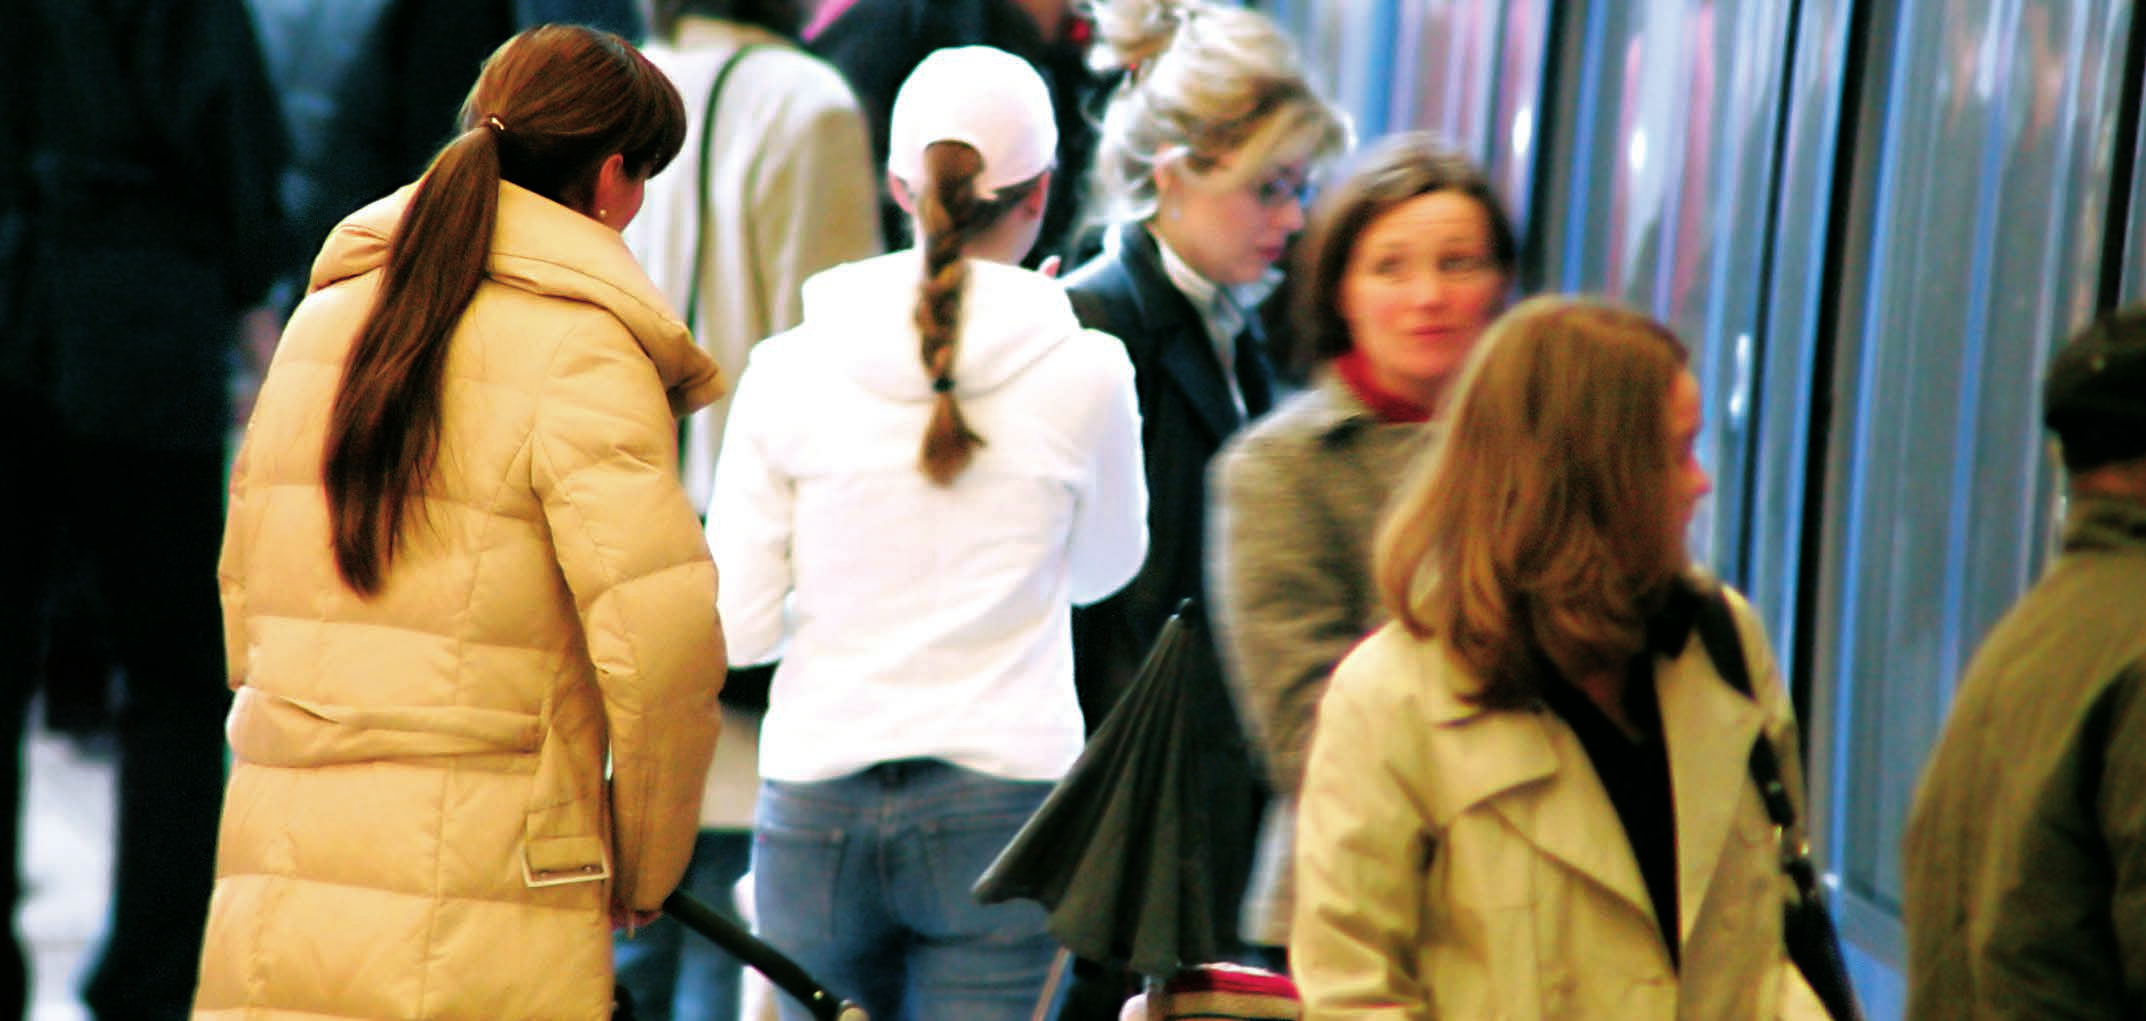 Der Bahnsteig Wartesituation mit attraktiven Zielgruppen Vor allem in Ballungszentren nutzen täglich Hunderttausende den öffentlichen Personennahverkehr (ÖPNV).